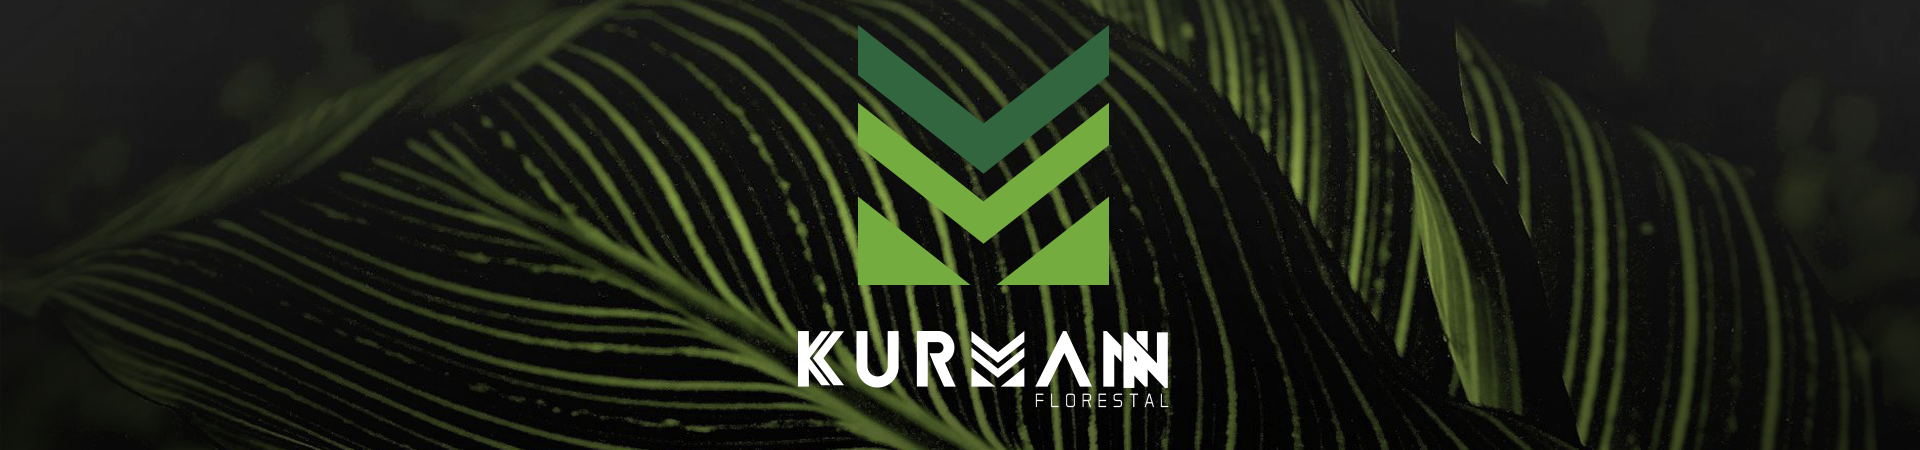 Kurmann